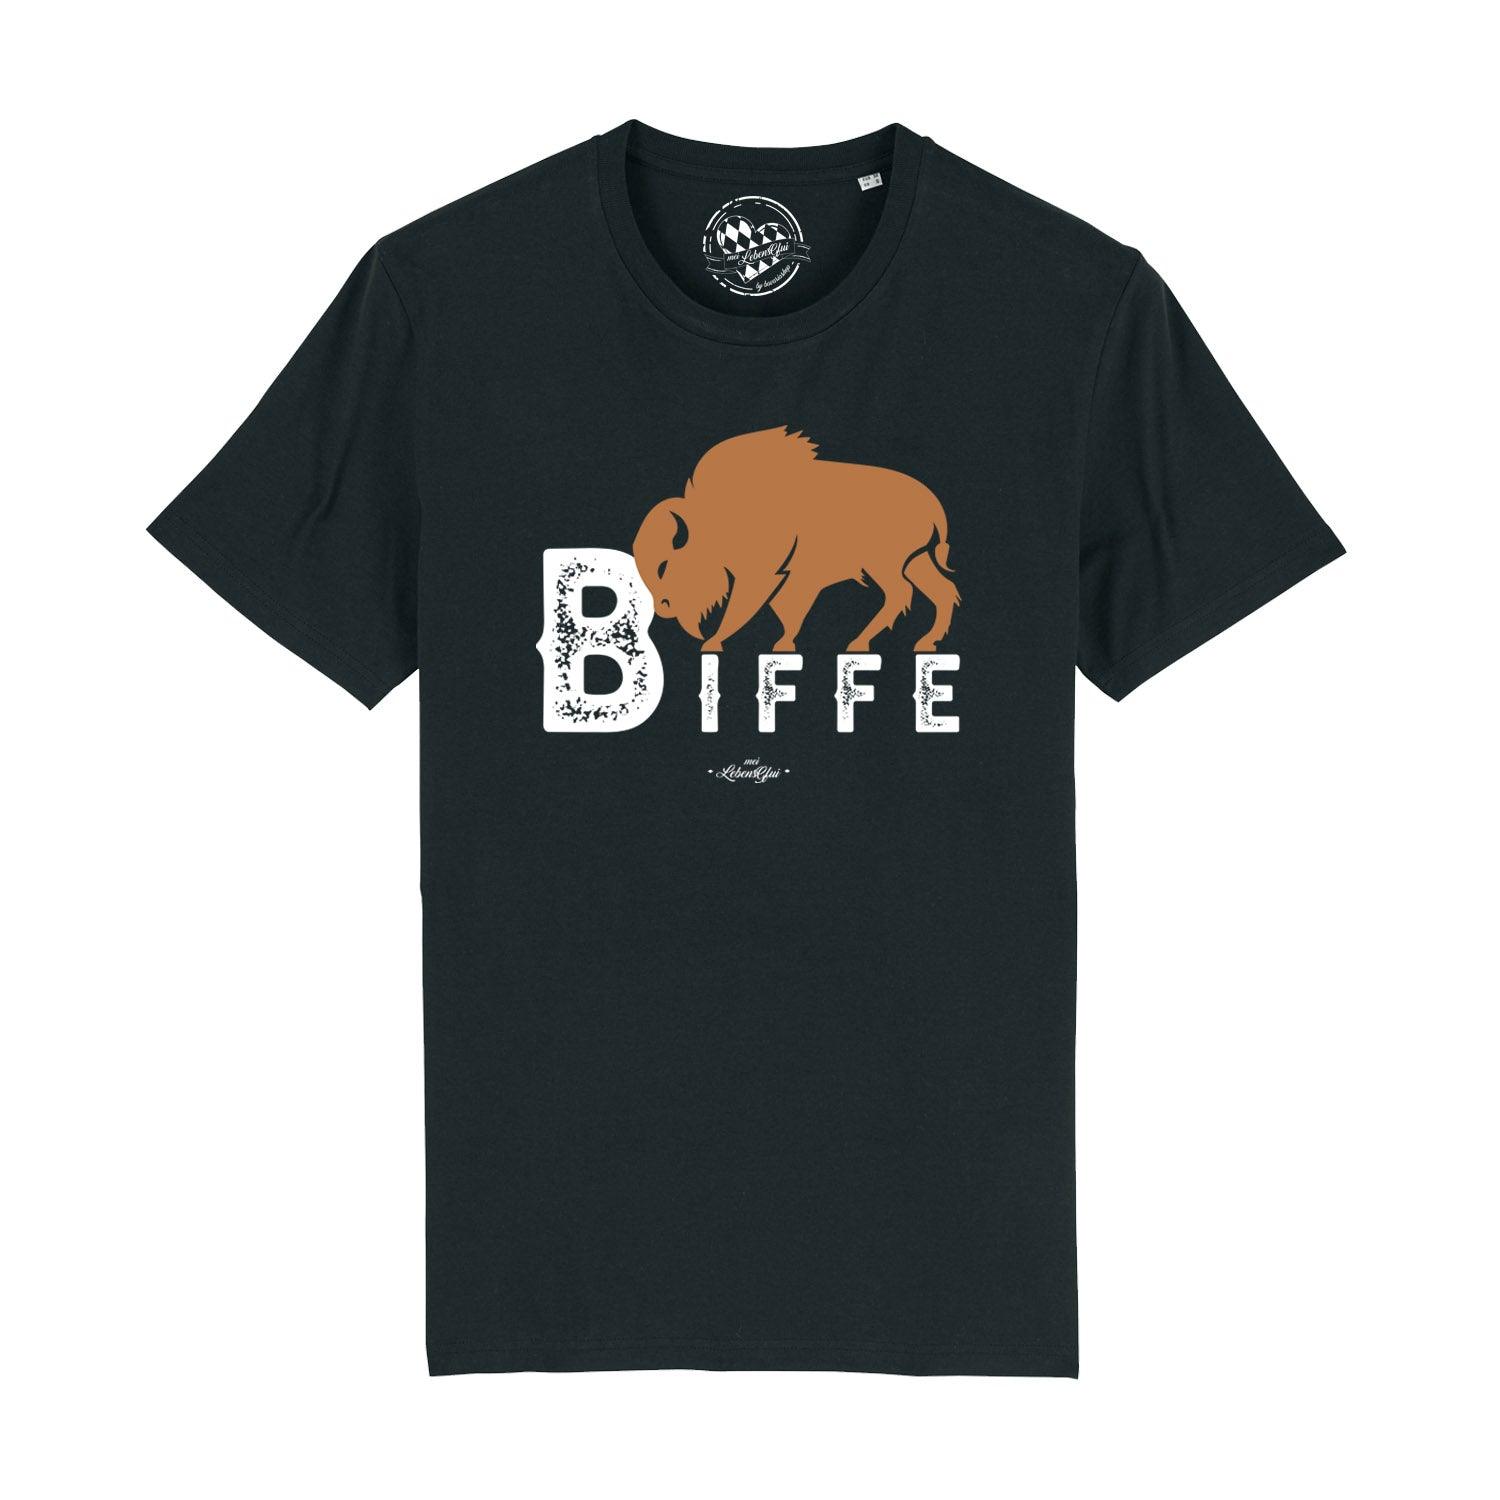 Herren T-Shirt "Biffe" - bavariashop - mei LebensGfui